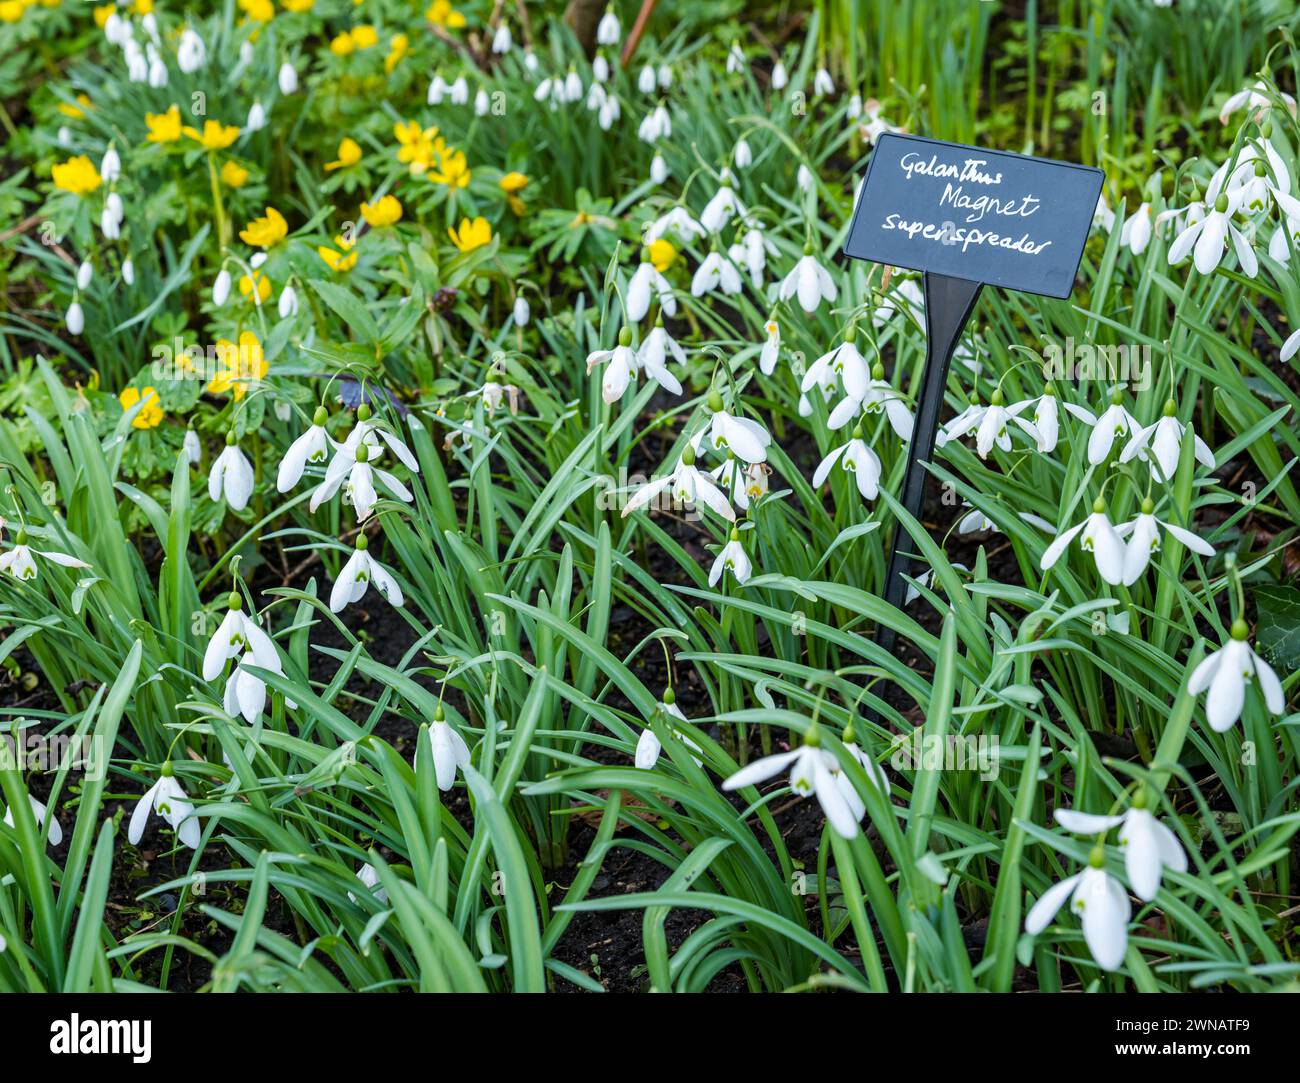 Etichetta varietà Snowdrops (Galanthus Magnet super spanditore), Scozia, Regno Unito Foto Stock